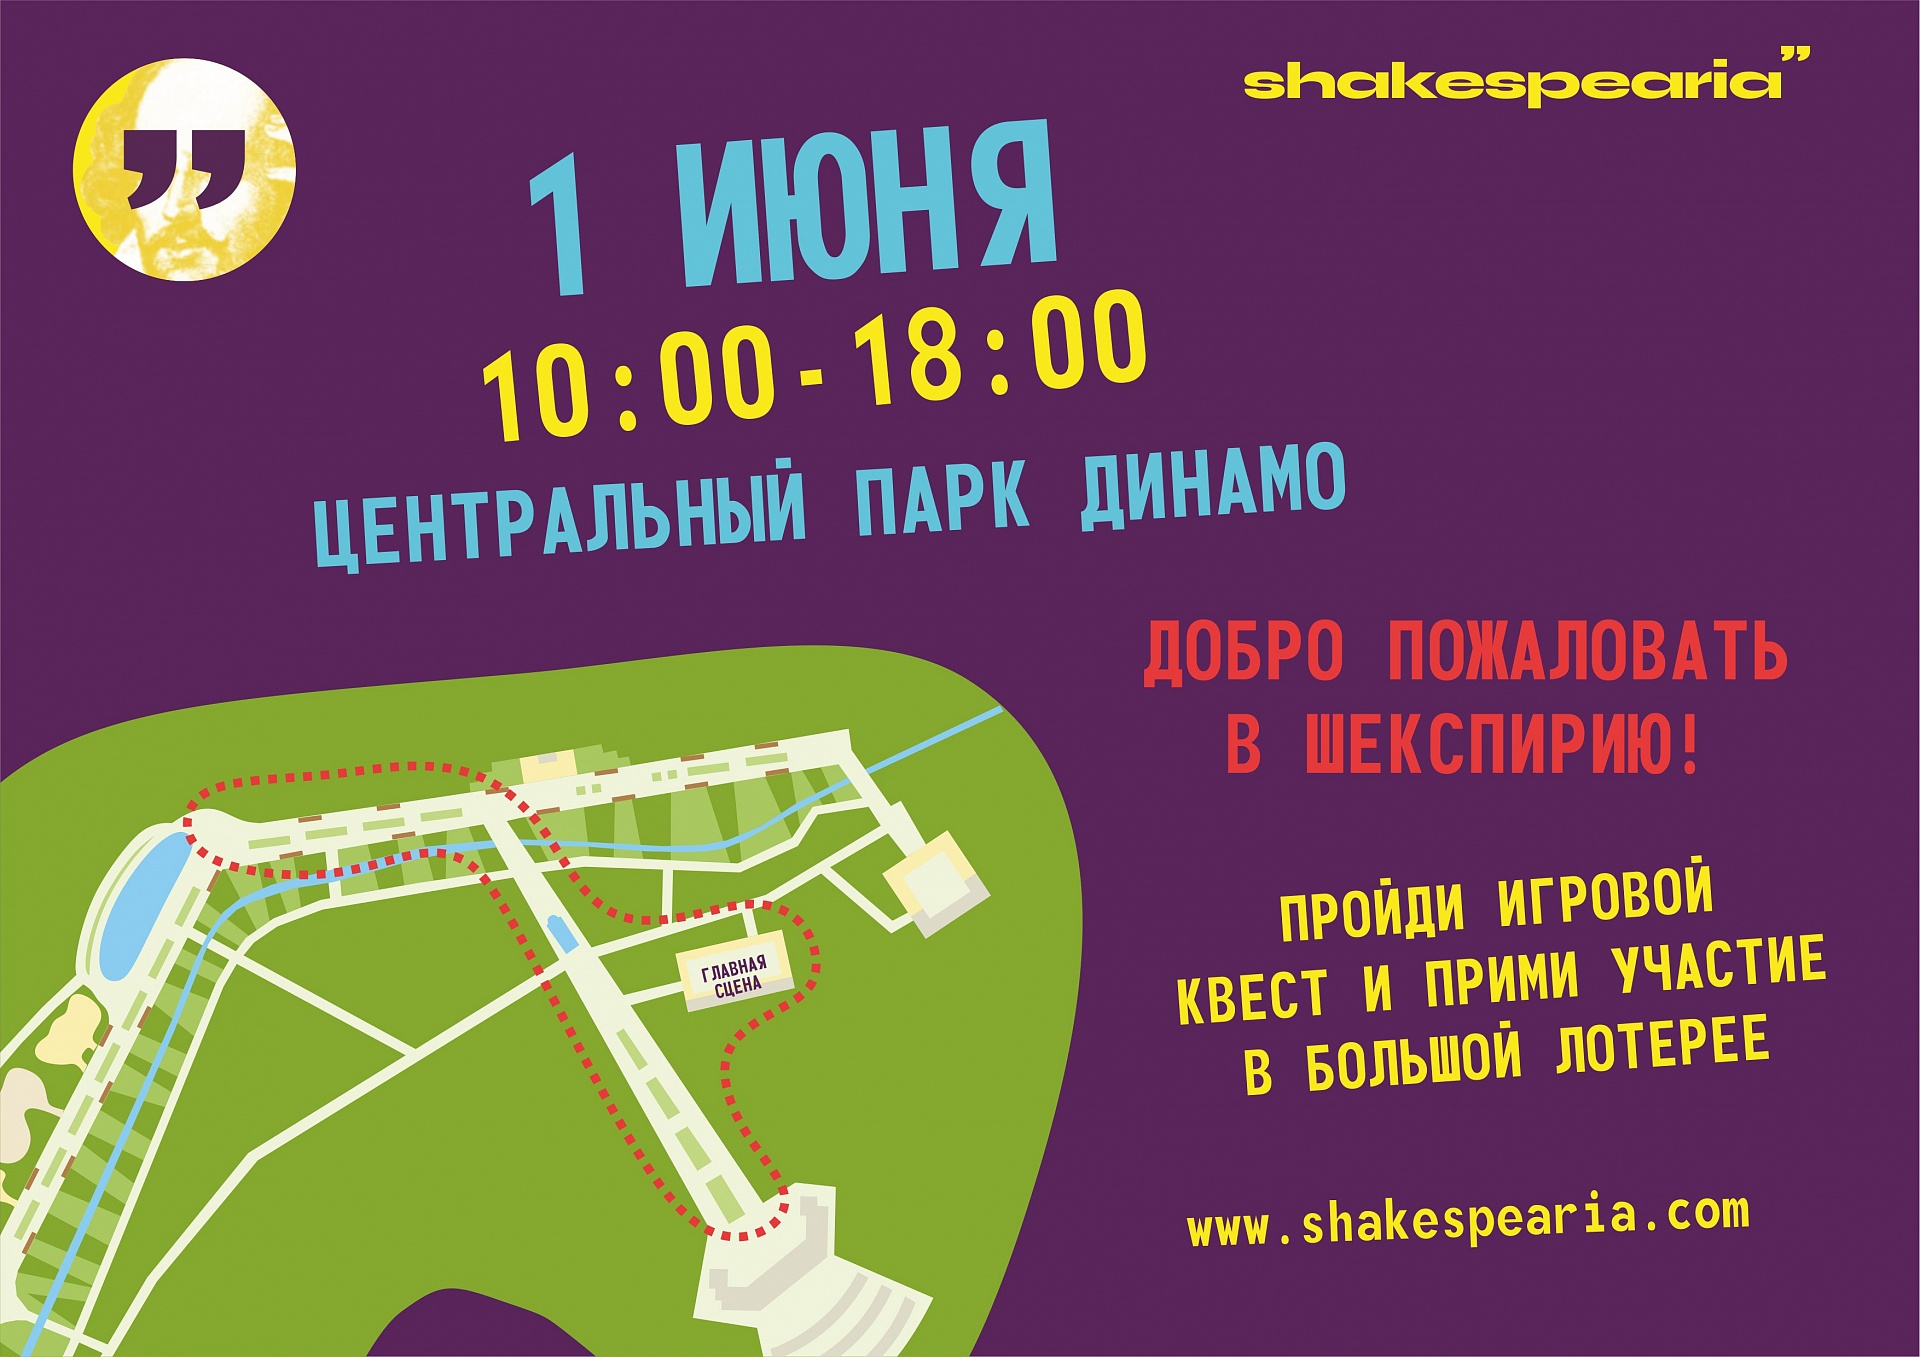 Фестиваль "Шекспирия"